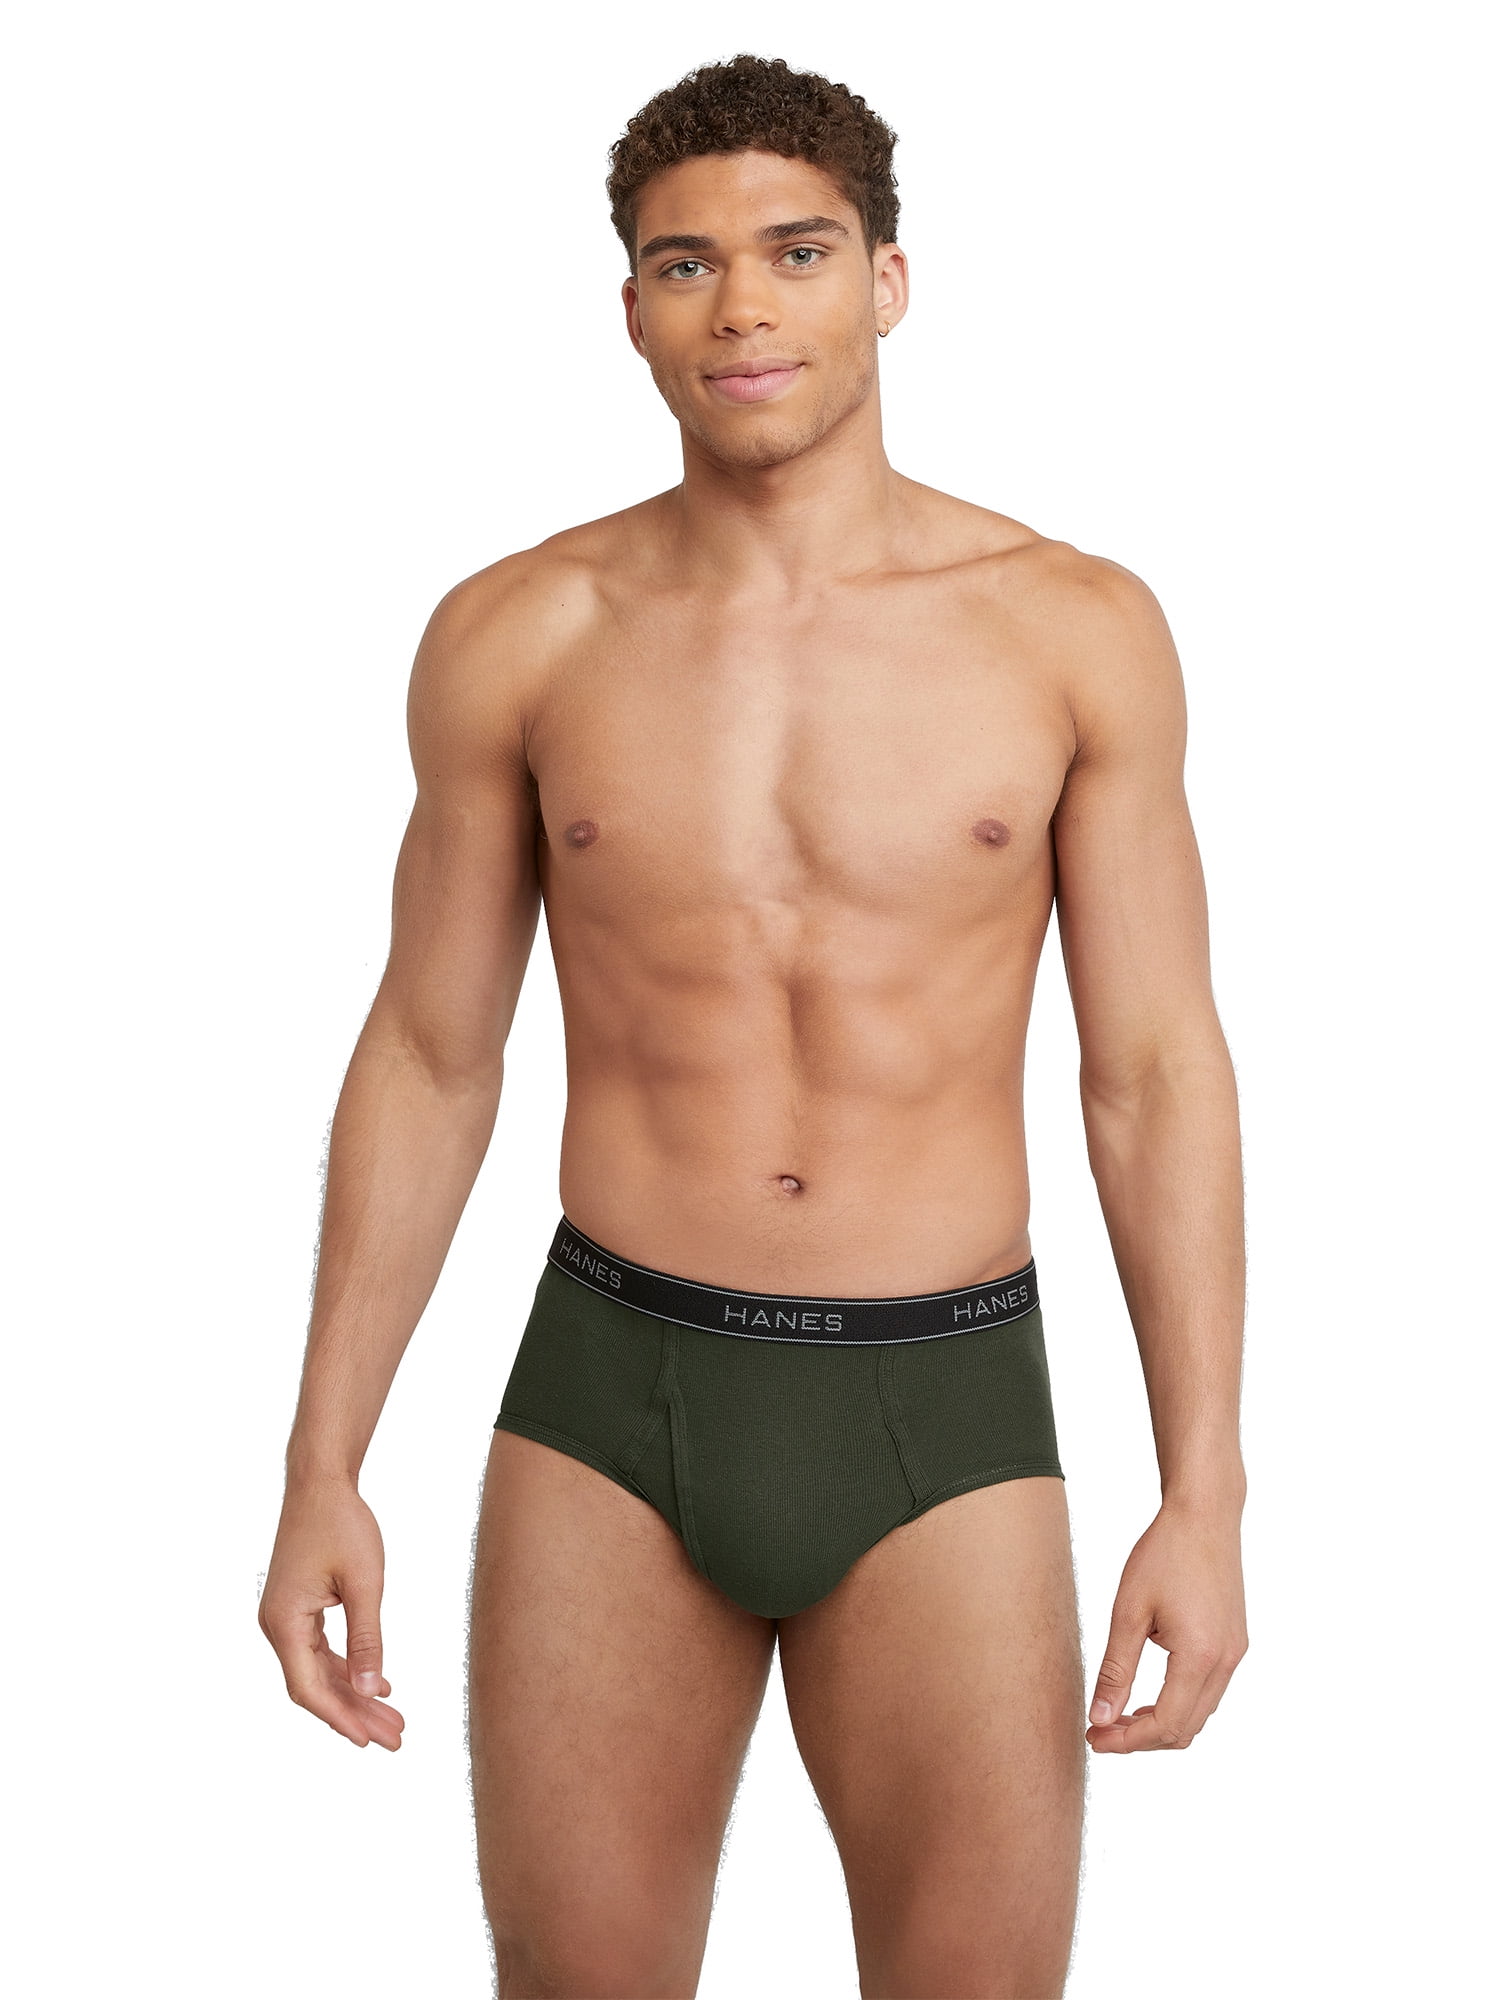 Hanes Men's Underwear Briefs Pack, Mid-Rise Cotton Moisture-Wicking Underwear  Briefs, 6-Pack 